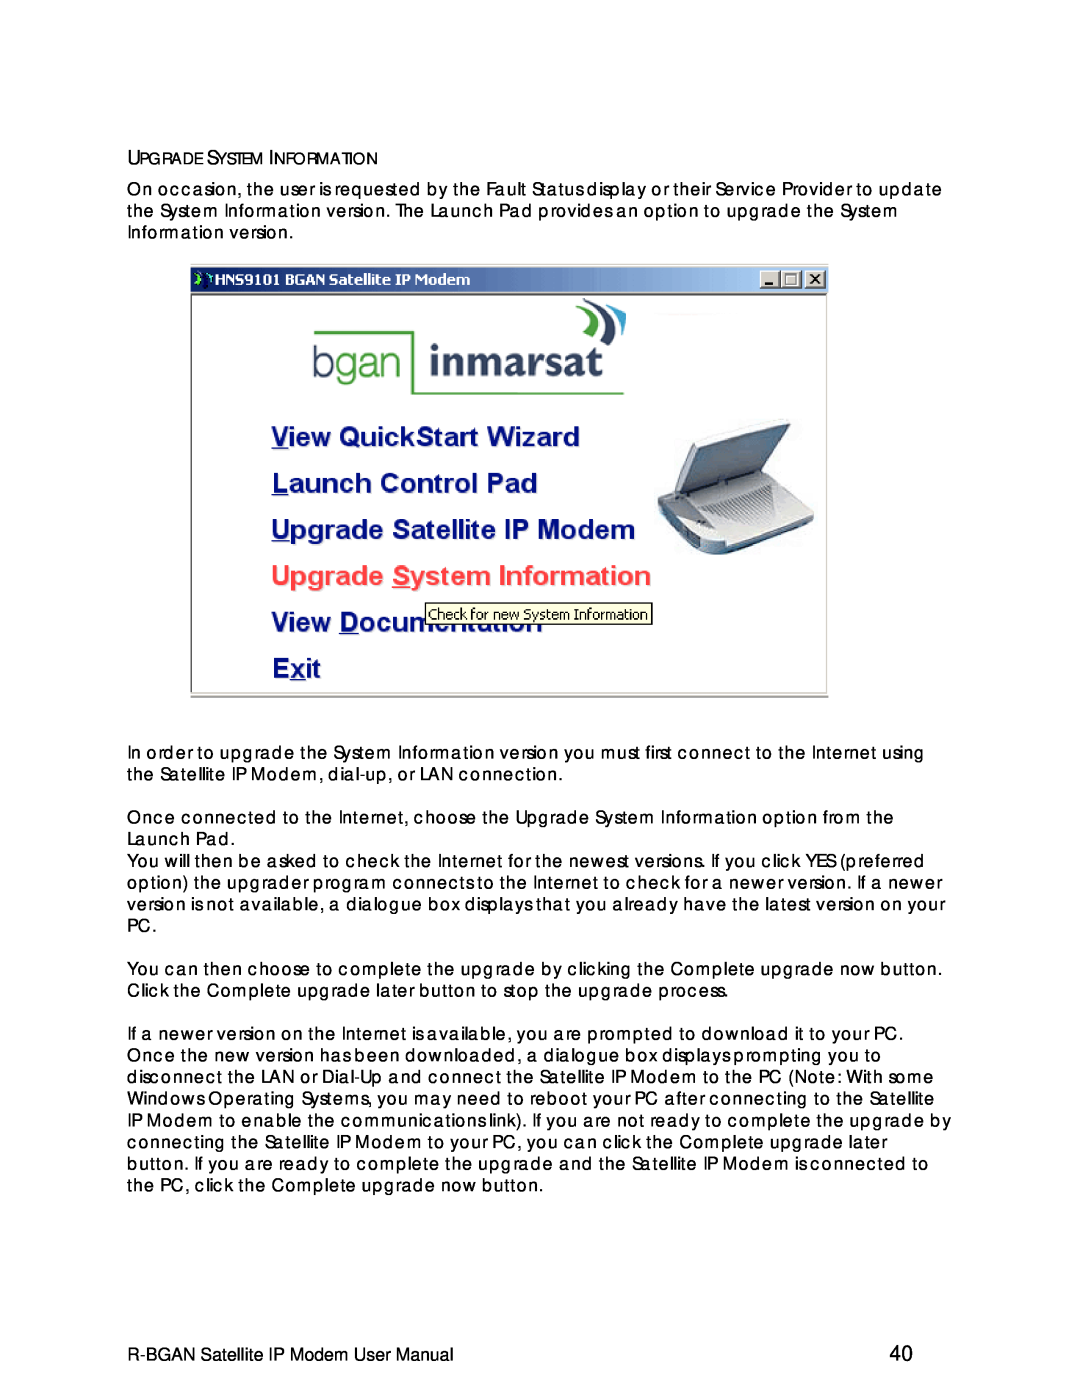 Hughes manual R-BGAN Satellite IP Modem User Manual 